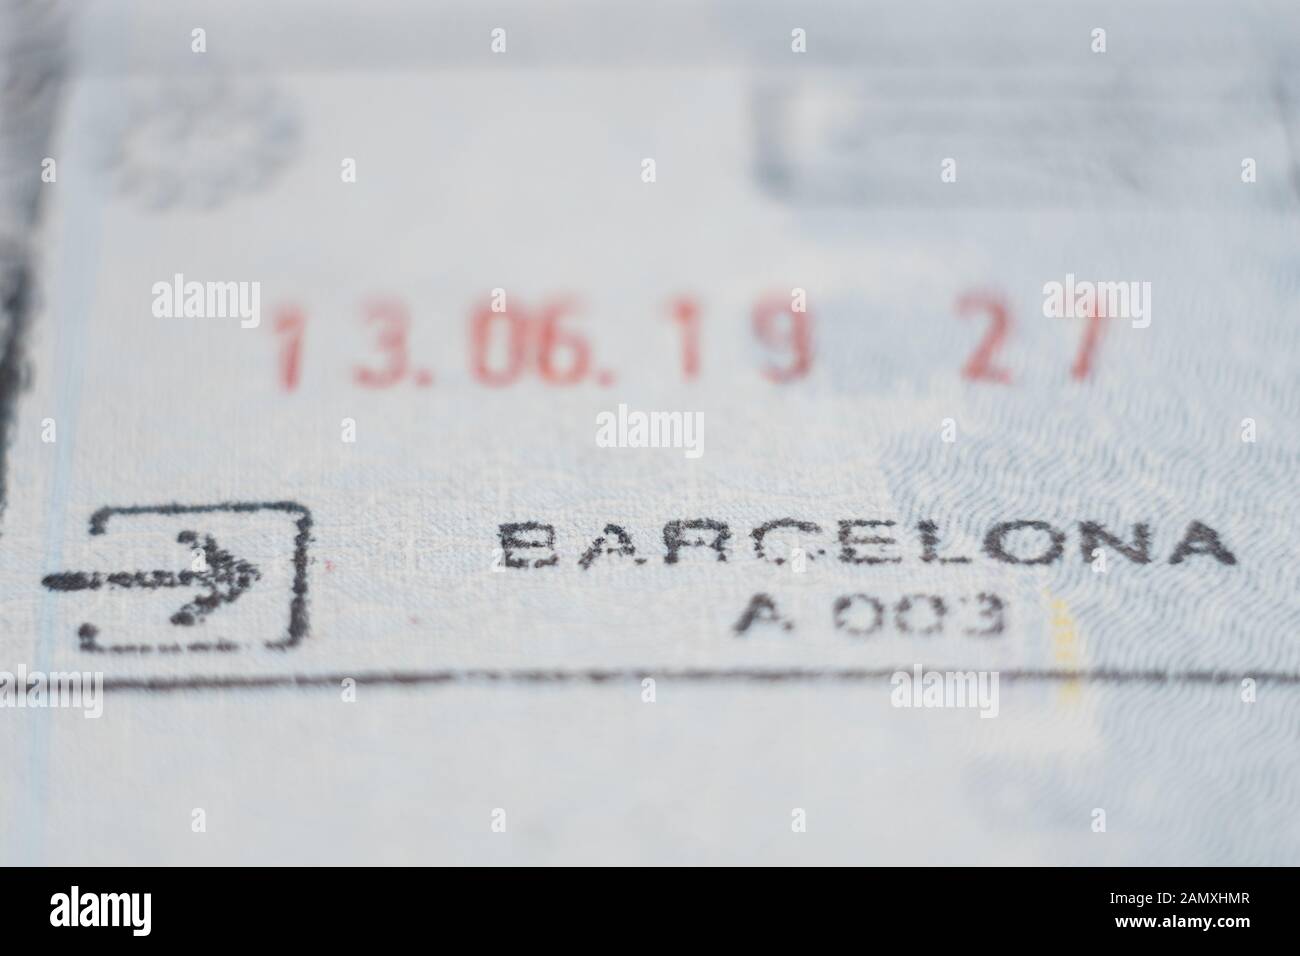 Détail macro Close-up de contrôle aux frontières de l'Union européenne douanière espagnole admission stamp avec word à Barcelone Banque D'Images